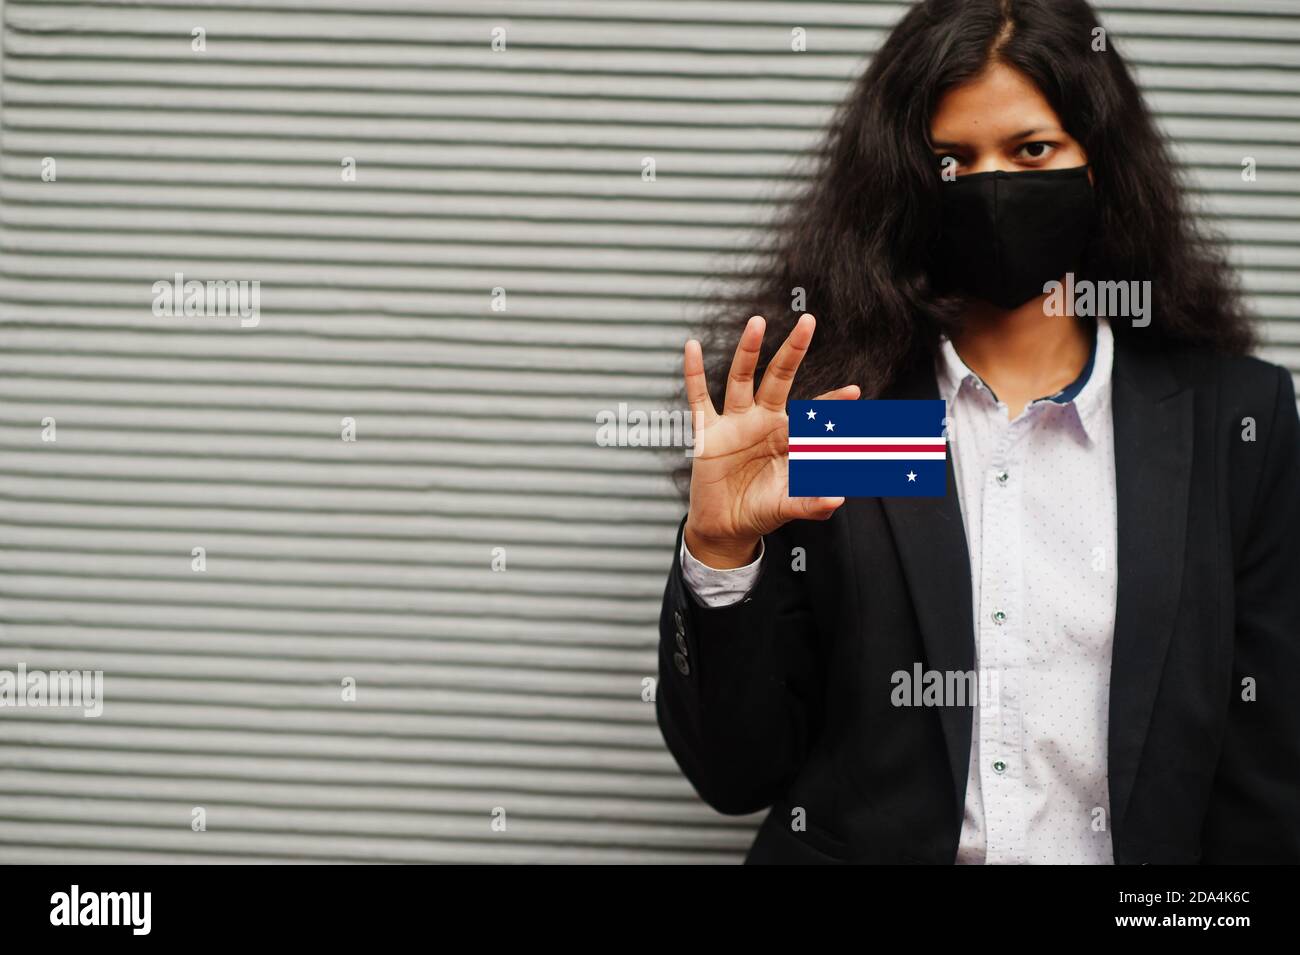 Asiatische Frau bei formeller Kleidung und schwarz schützen Gesichtsmaske halten Howland und Baker Islands Flagge bei der Hand vor grauem Hintergrund. Coronavirus bei Country con Stockfoto